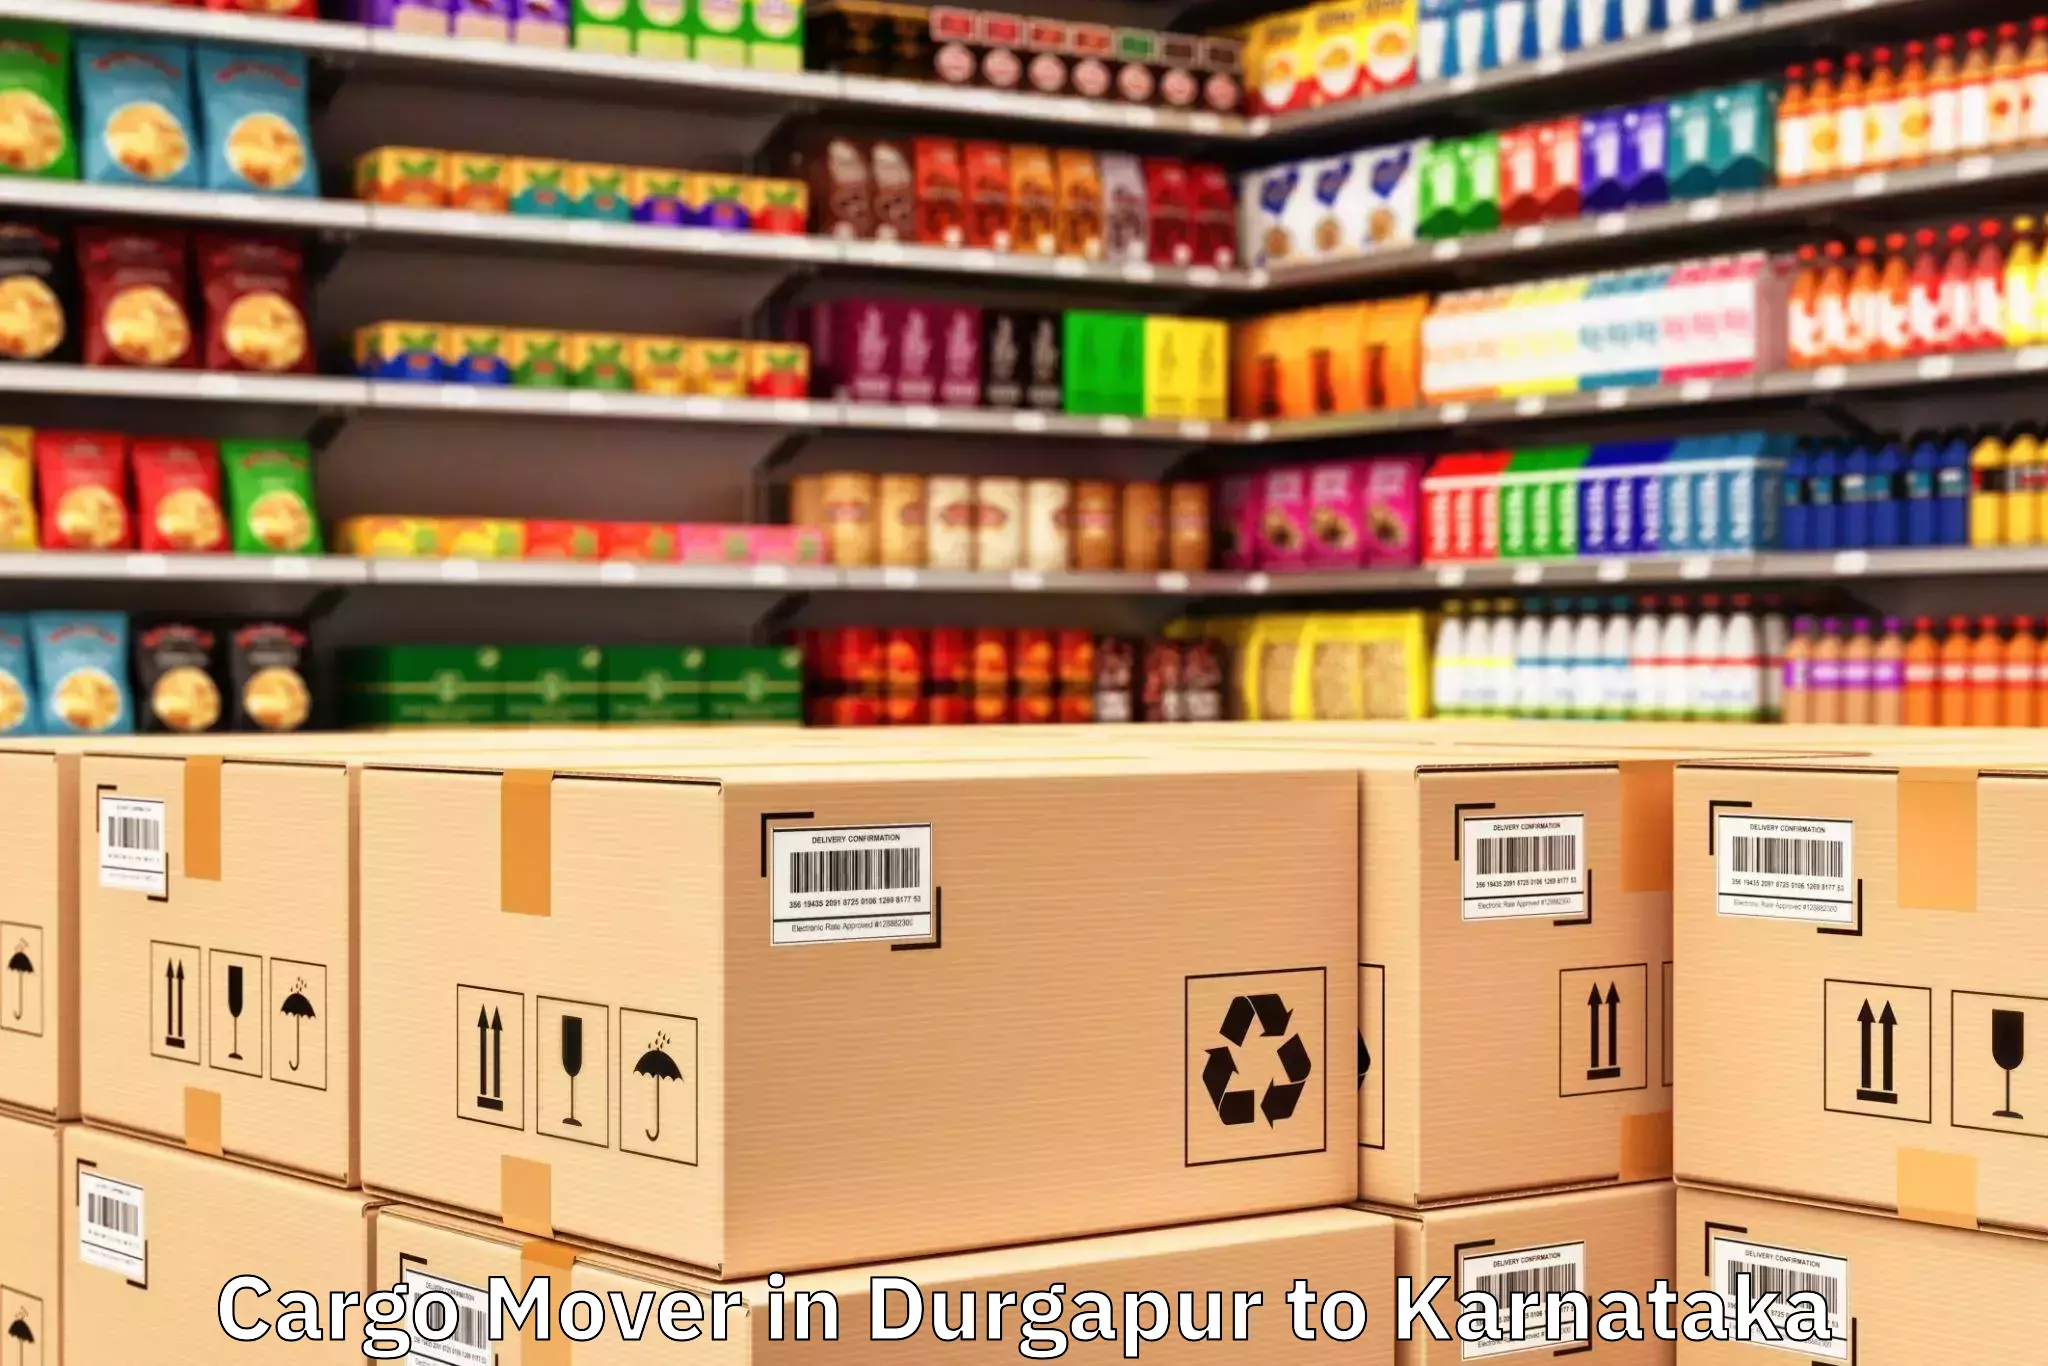 Reliable Durgapur to Bengaluru Cargo Mover